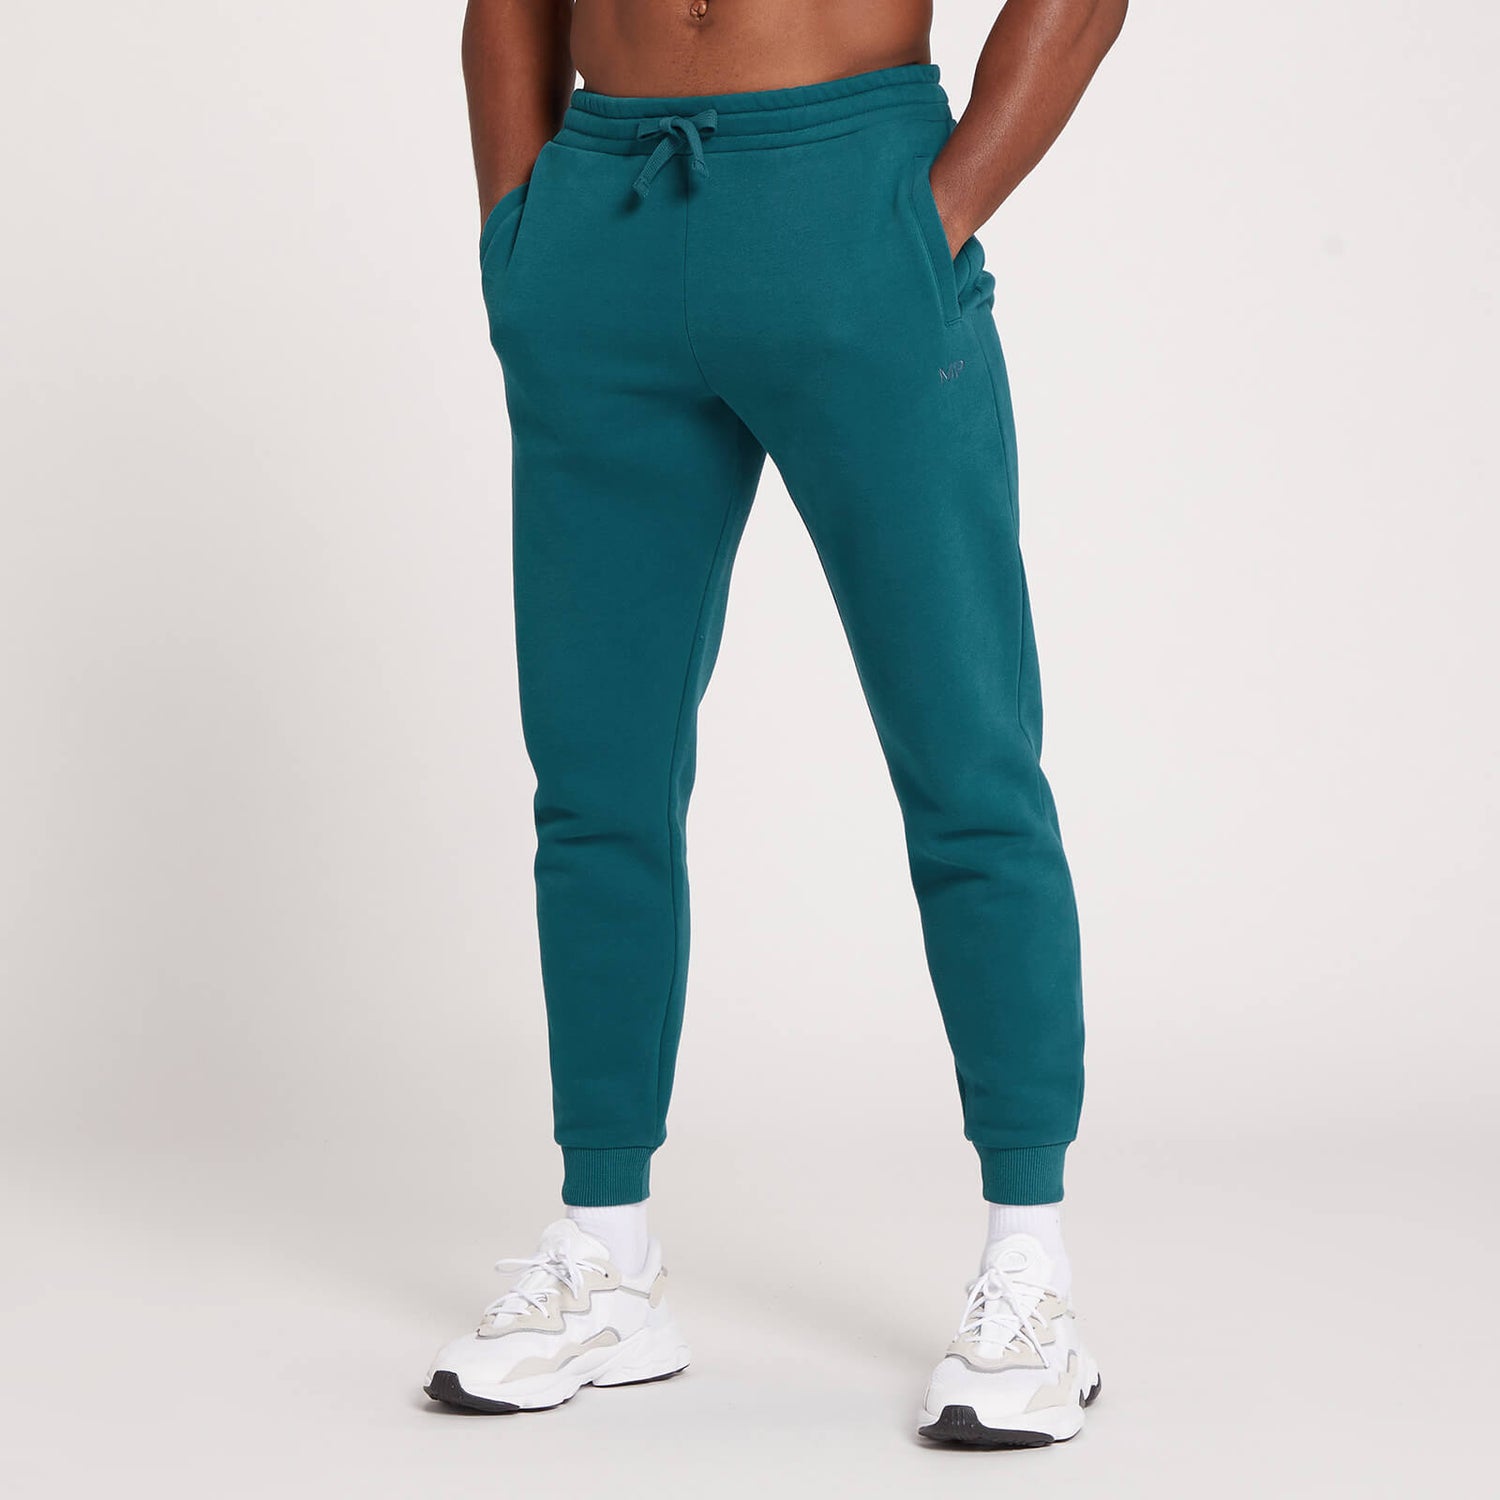 Pantalón deportivo con detalle gráfico de MP repetido para hombre de MP - Verde azulado oscuro - XXS